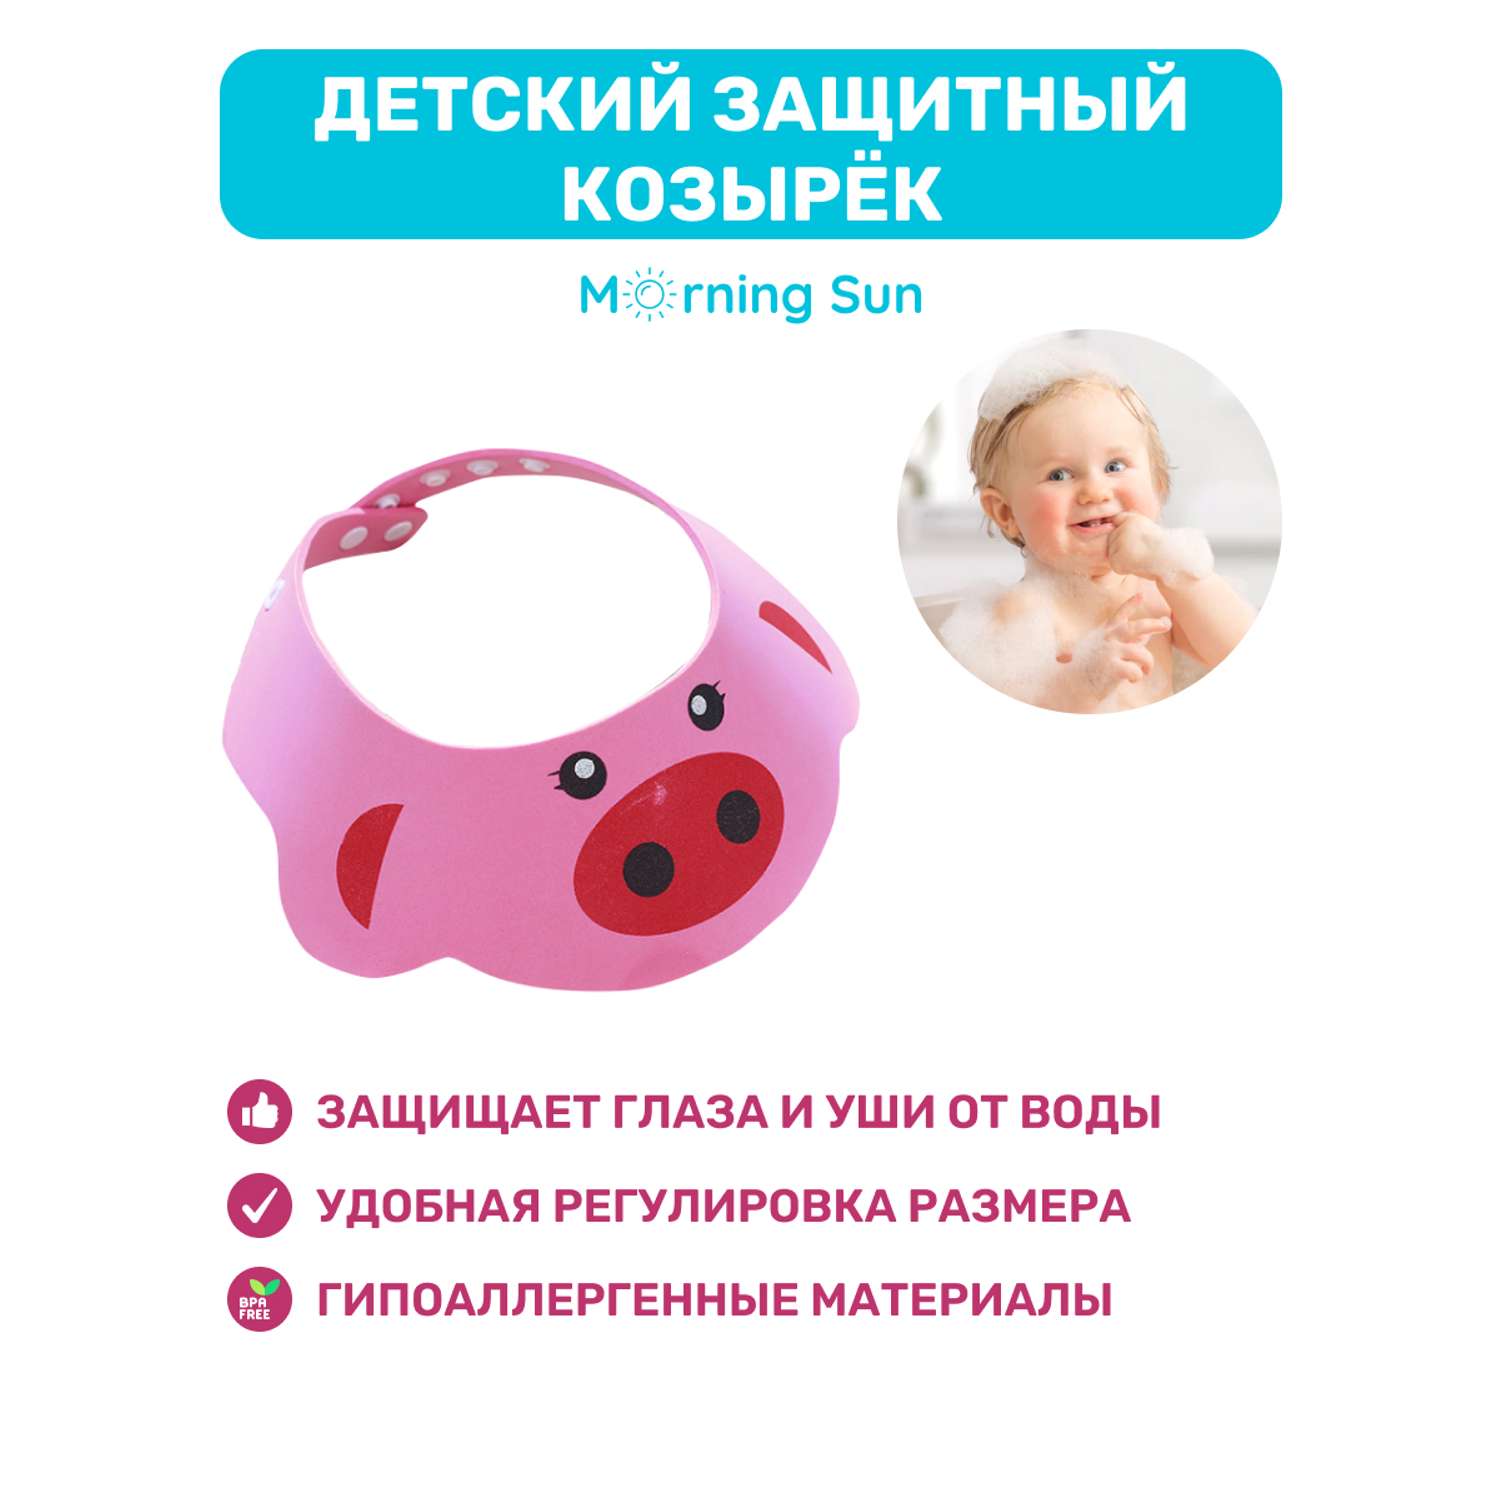 Защитный козырек Morning Sun для мытья головы и купания розовый - фото 2